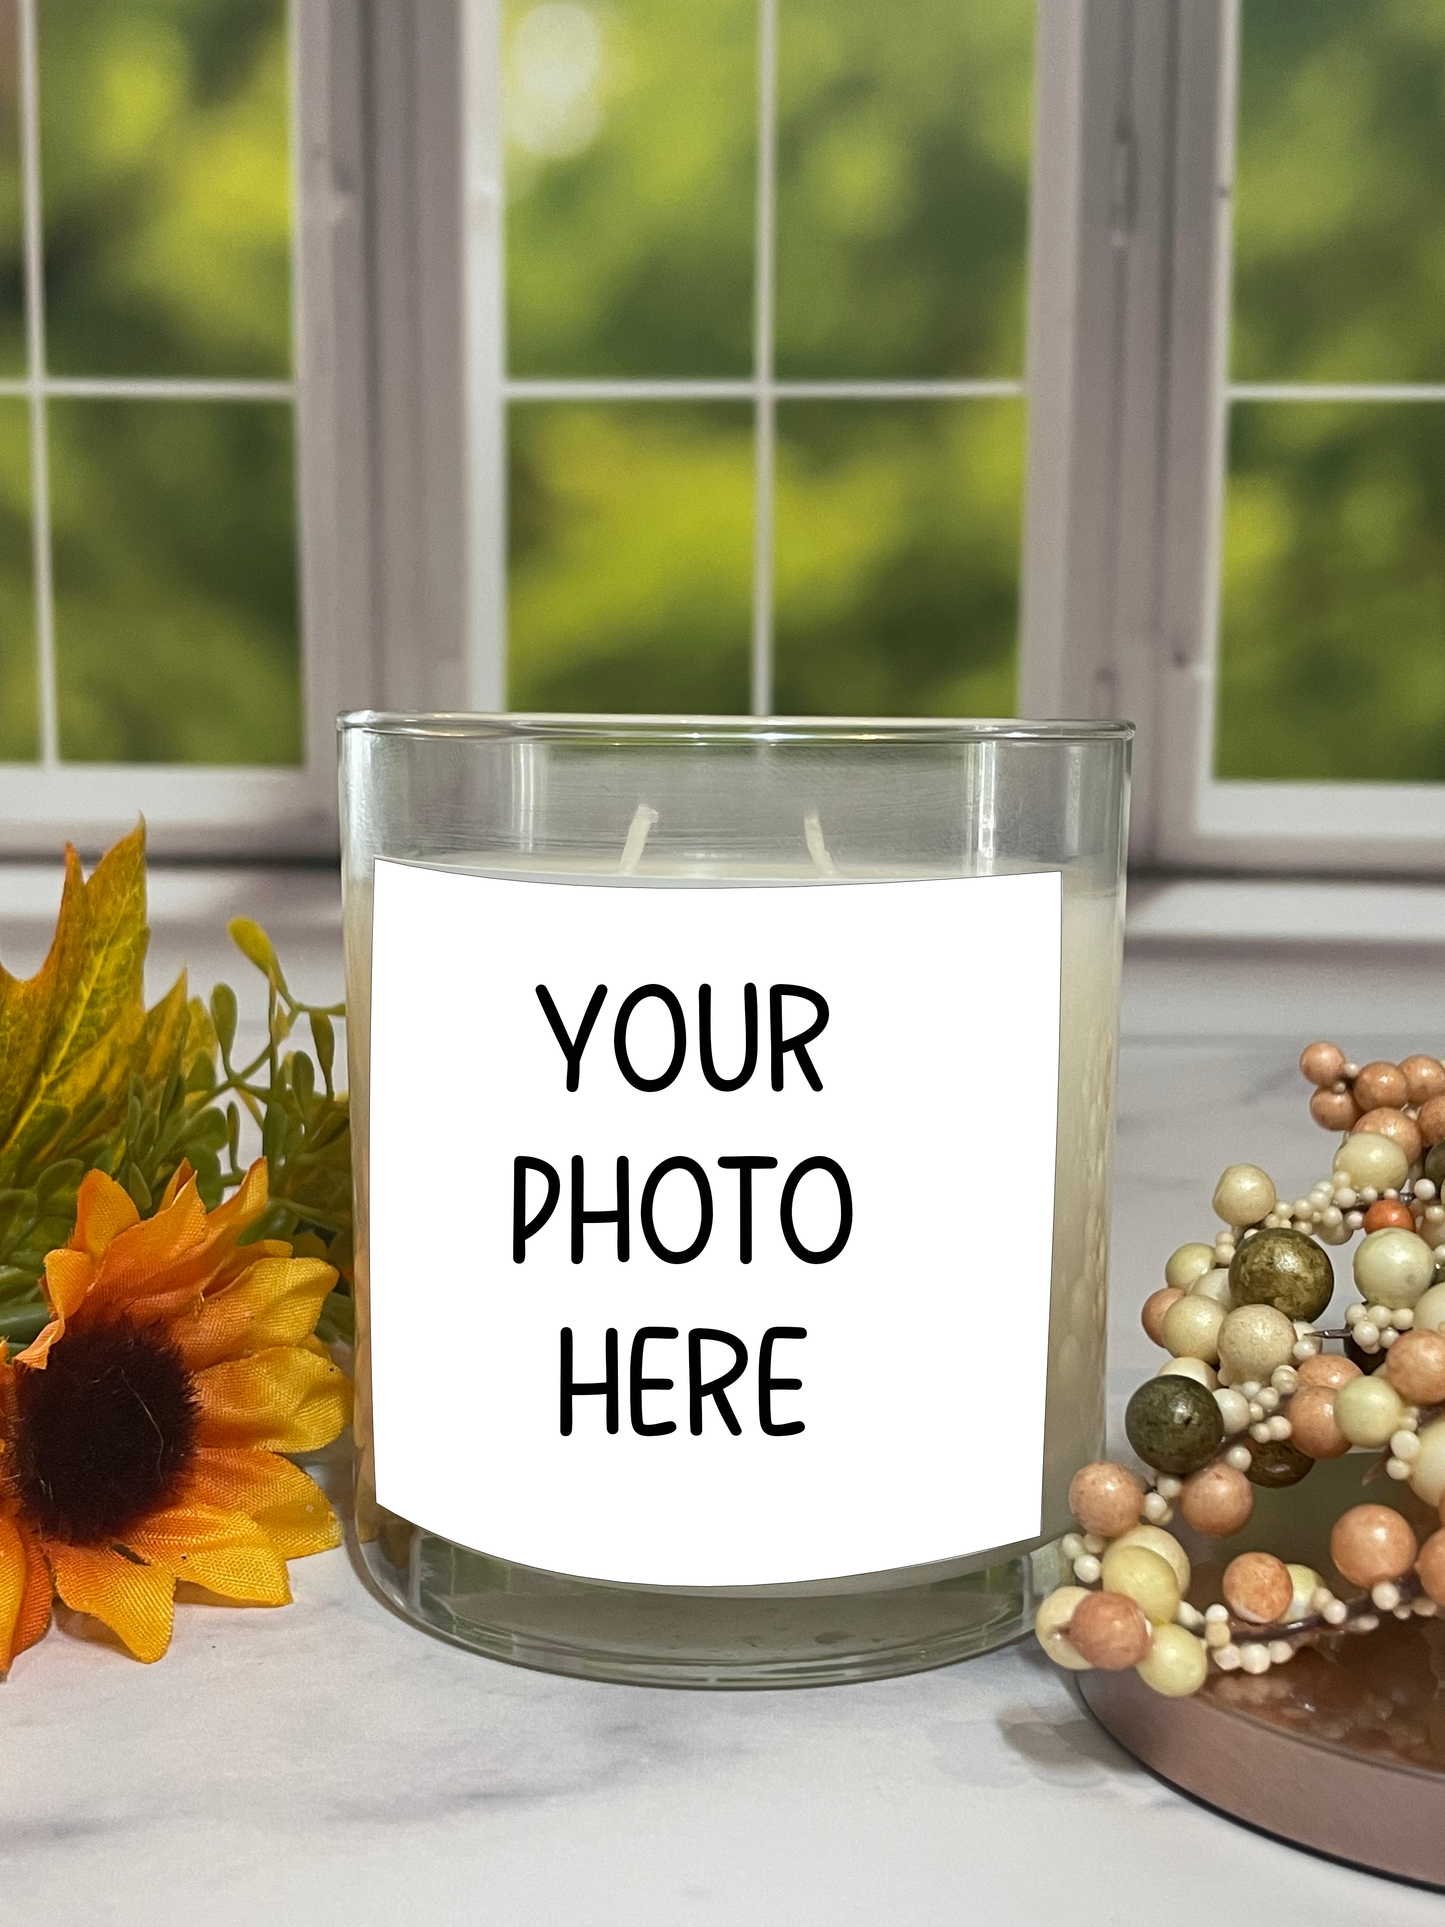 Customized Photo Candle